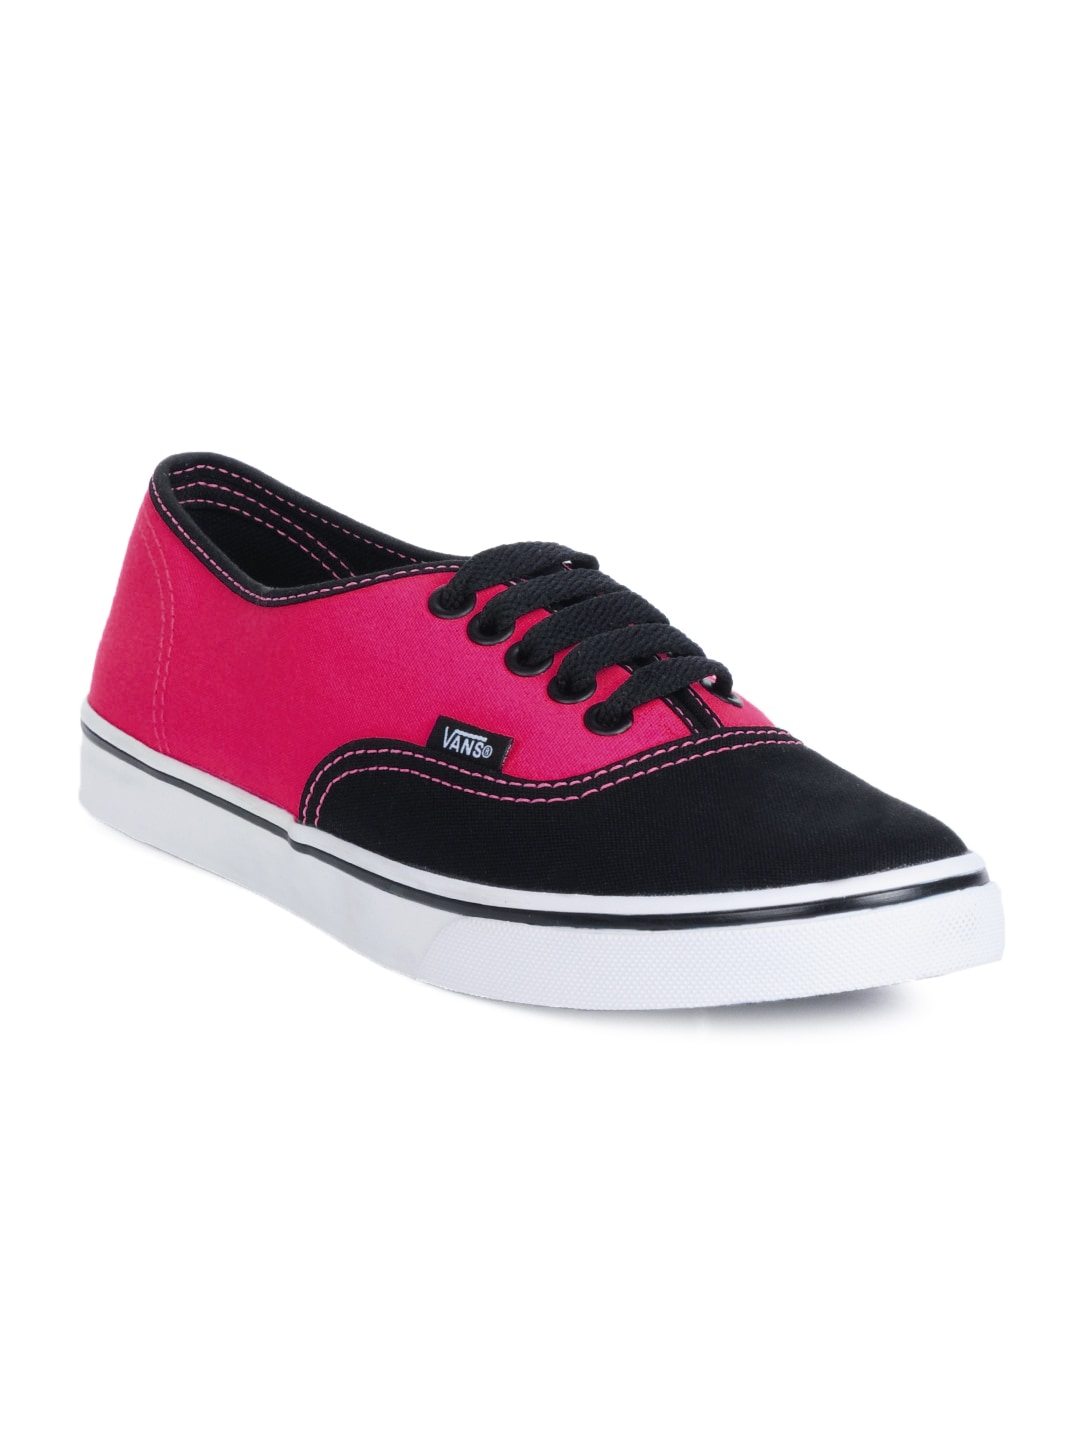 Vans Unisex Authentic Black & Pink Shoes